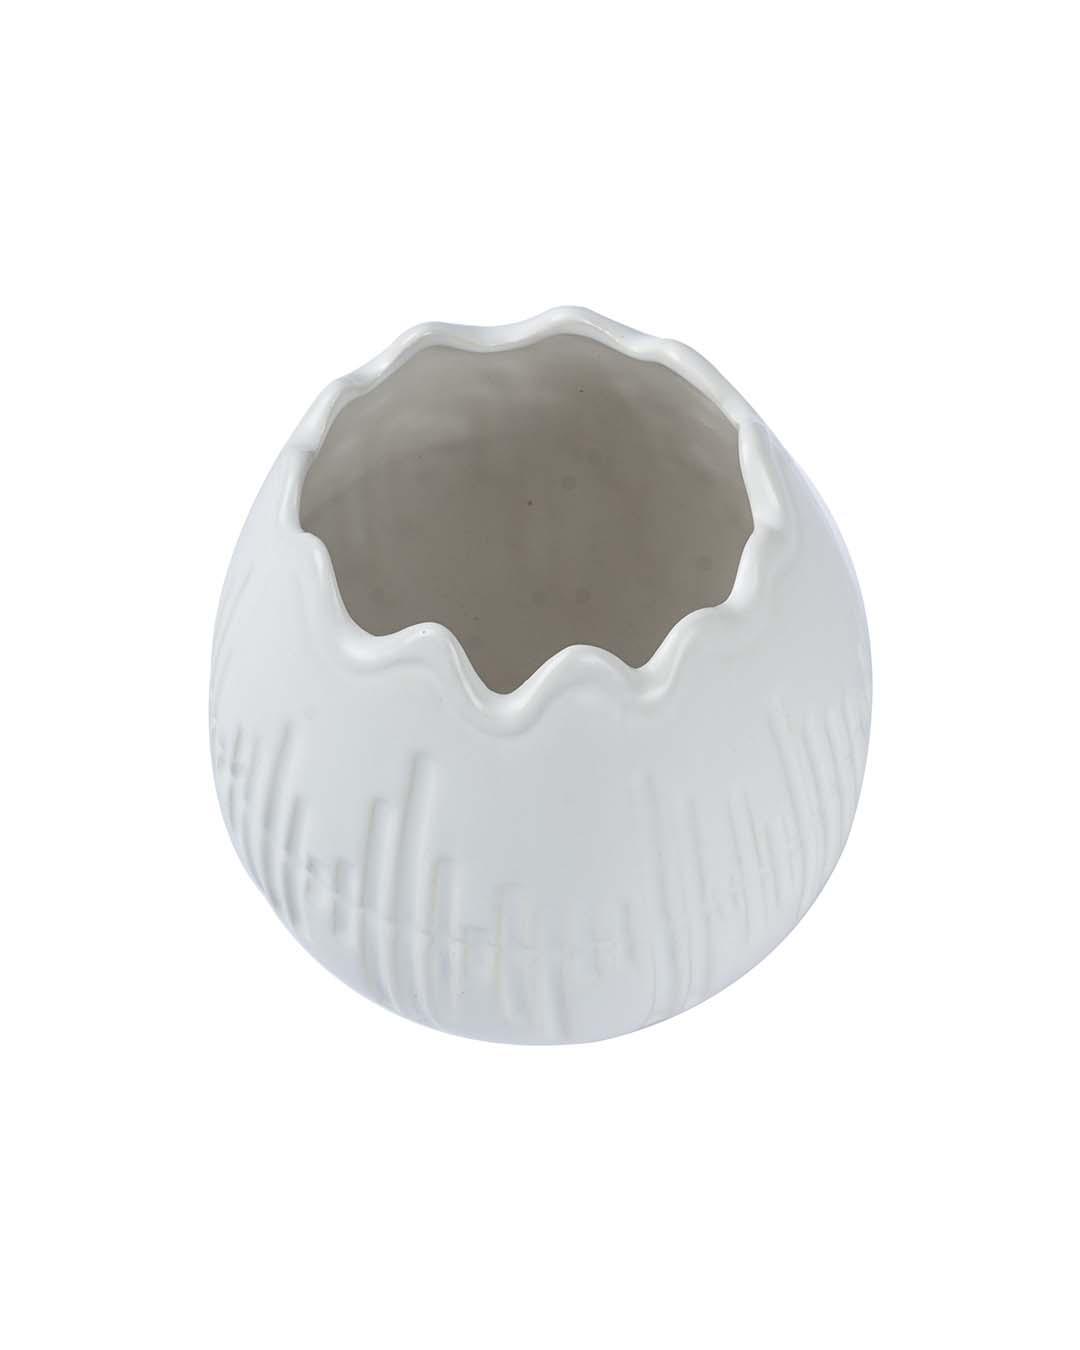 Vase, Engraved, White, Ceramic - MARKET 99